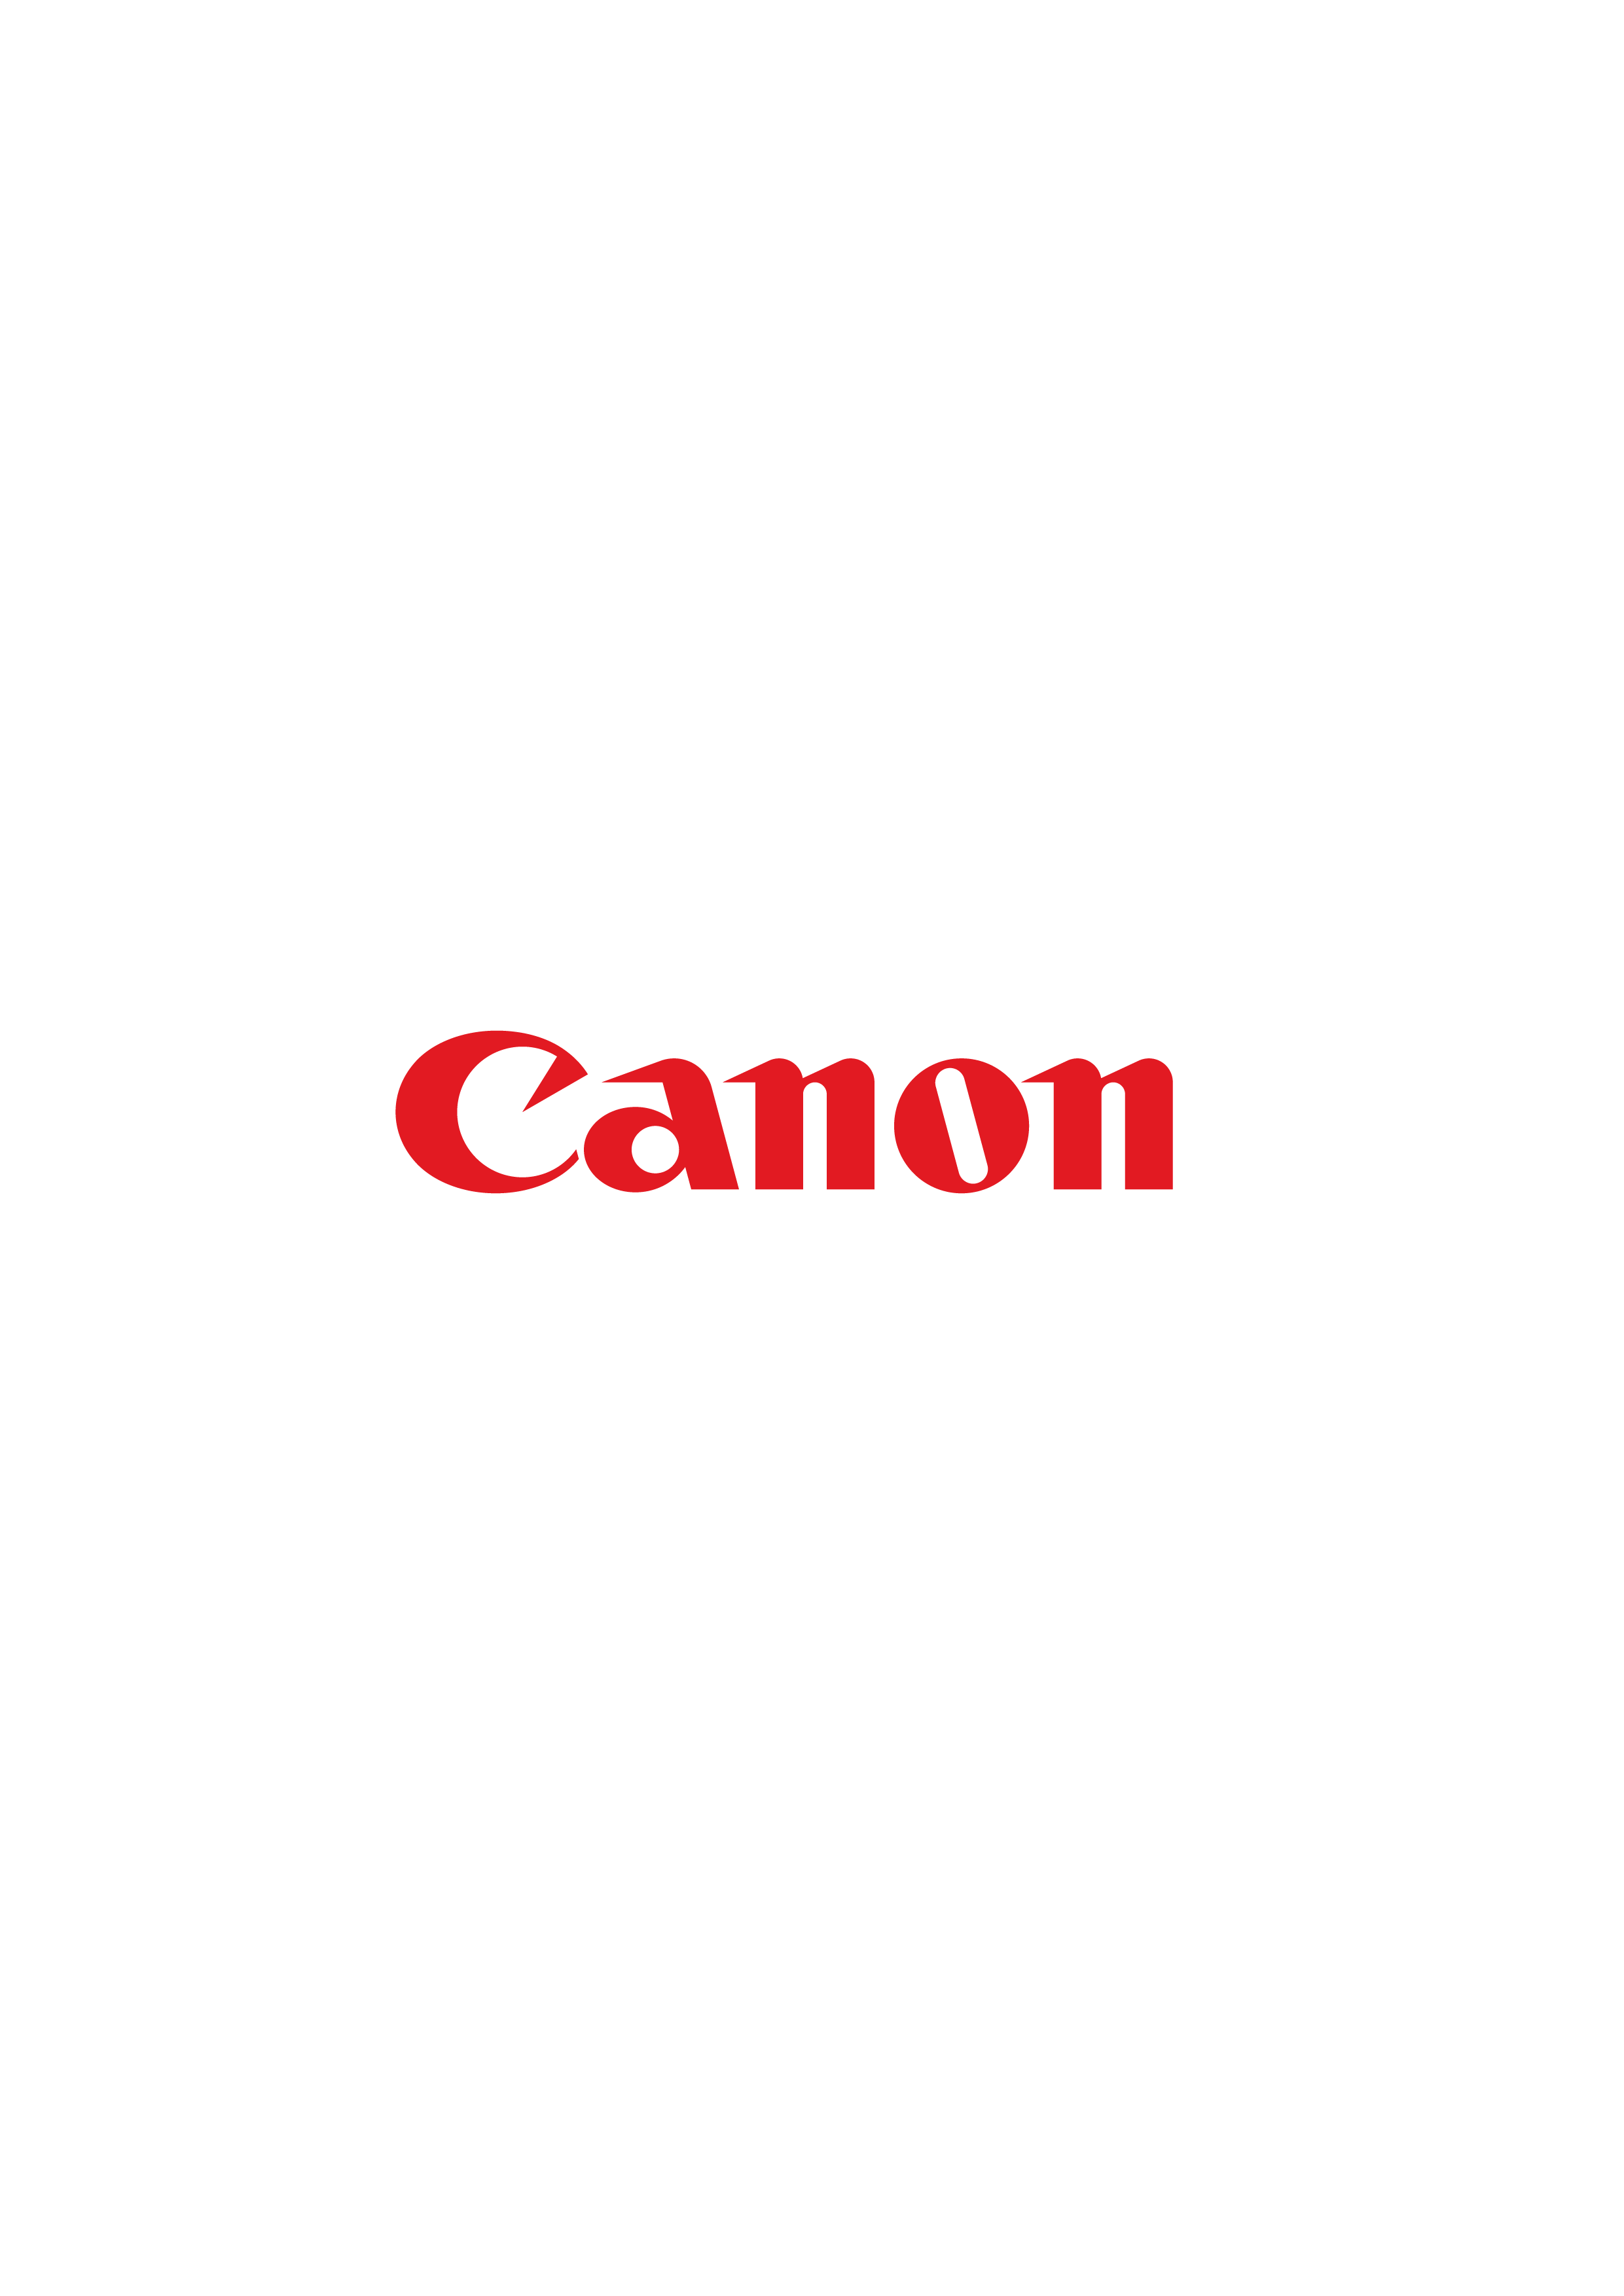 Canon, IDC MarketScape’in sürdürülebilirlik raporunda sektör lideri olarak yer aldı